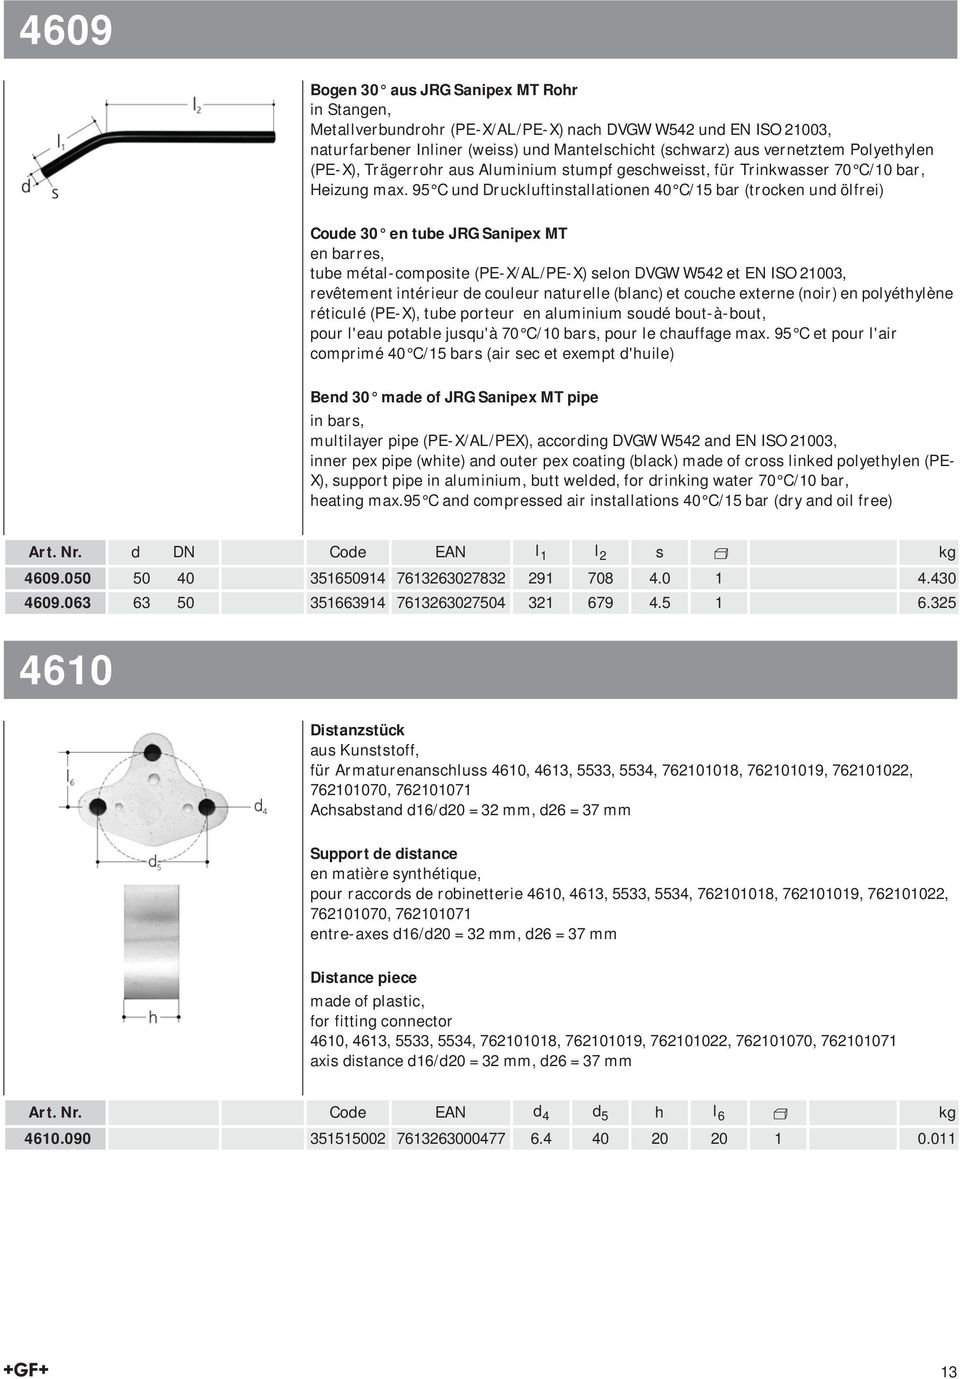 95 C und Druckluftinstallationen 40 C/15 bar (trocken und ölfrei) Coude 30 en tube JRG Sanipex MT en barres, tube métal-composite (PE-X/AL/PE-X) selon DVGW W542 et EN ISO 21003, revêtement intérieur